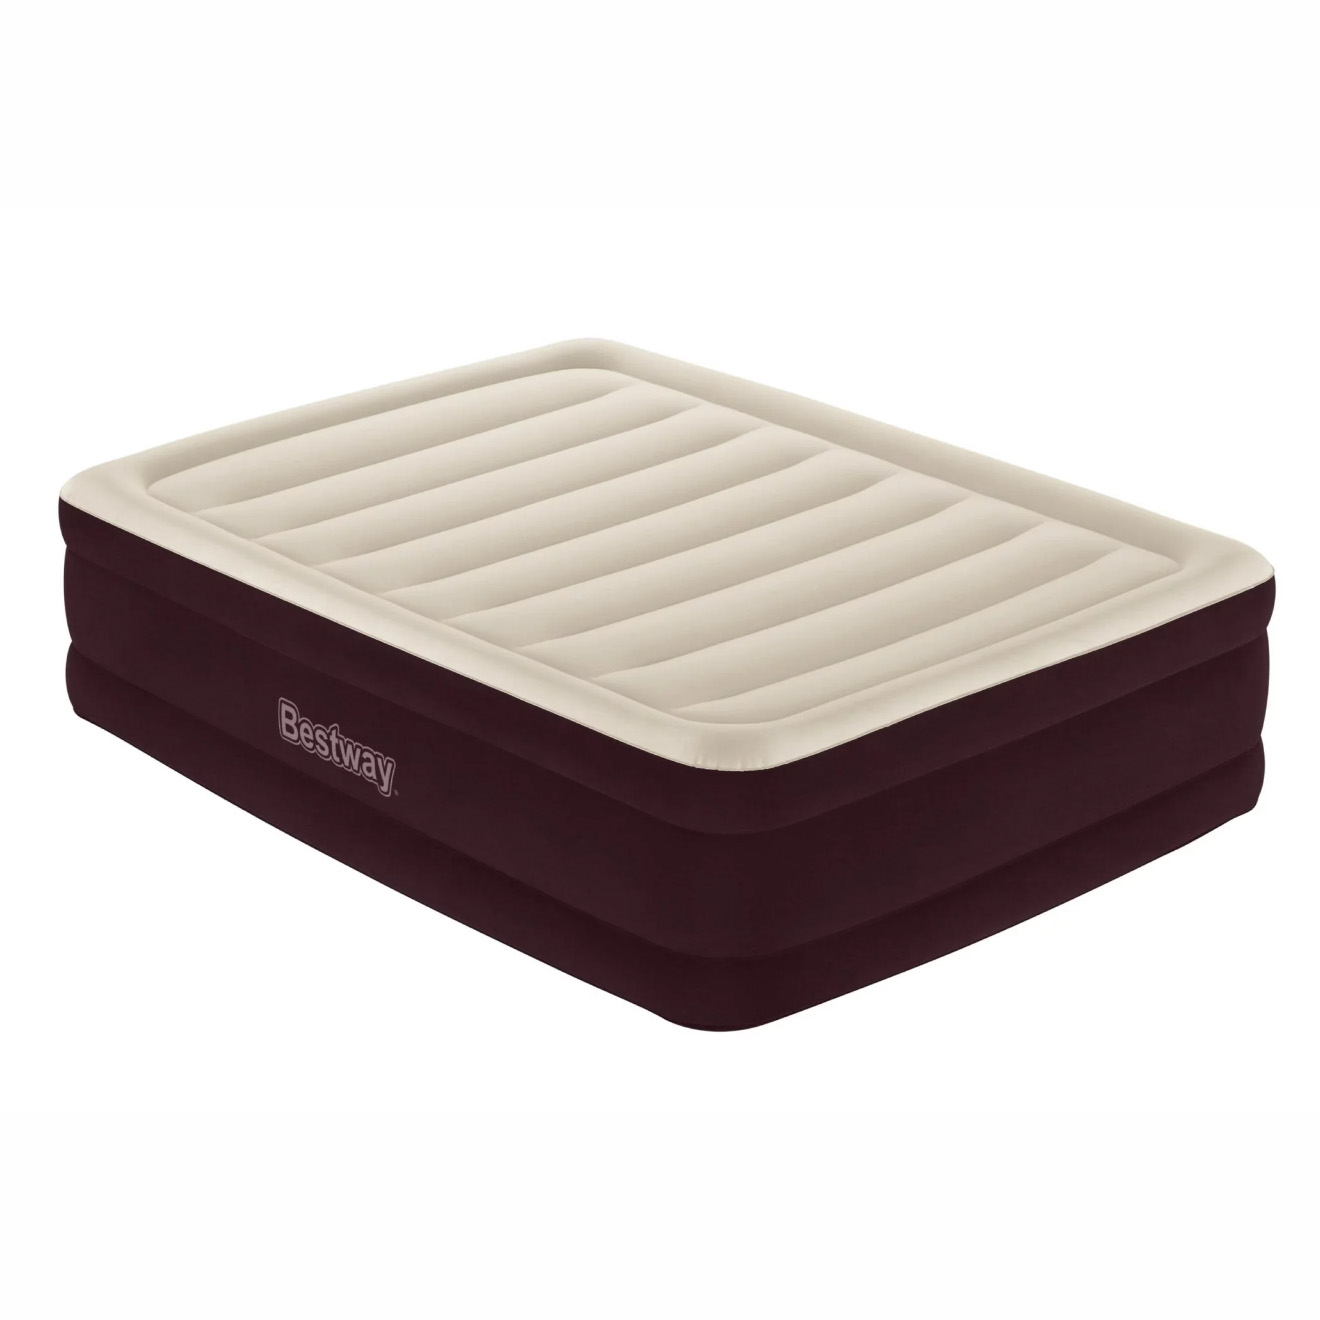 White and maroon air mattress